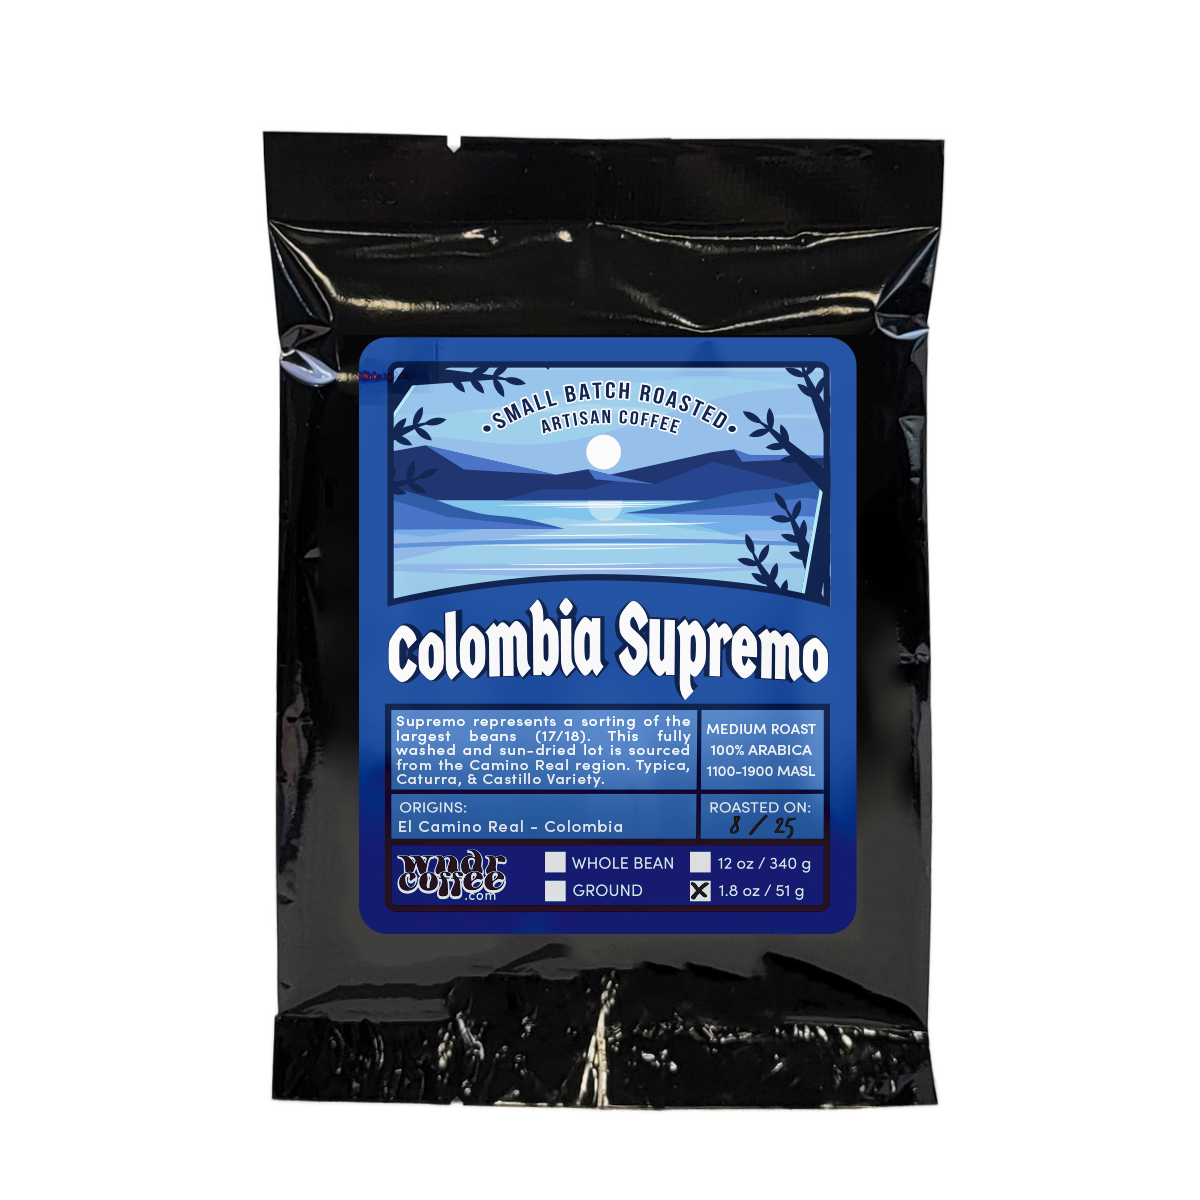 Colombia Supremo - El Camino Real - South America